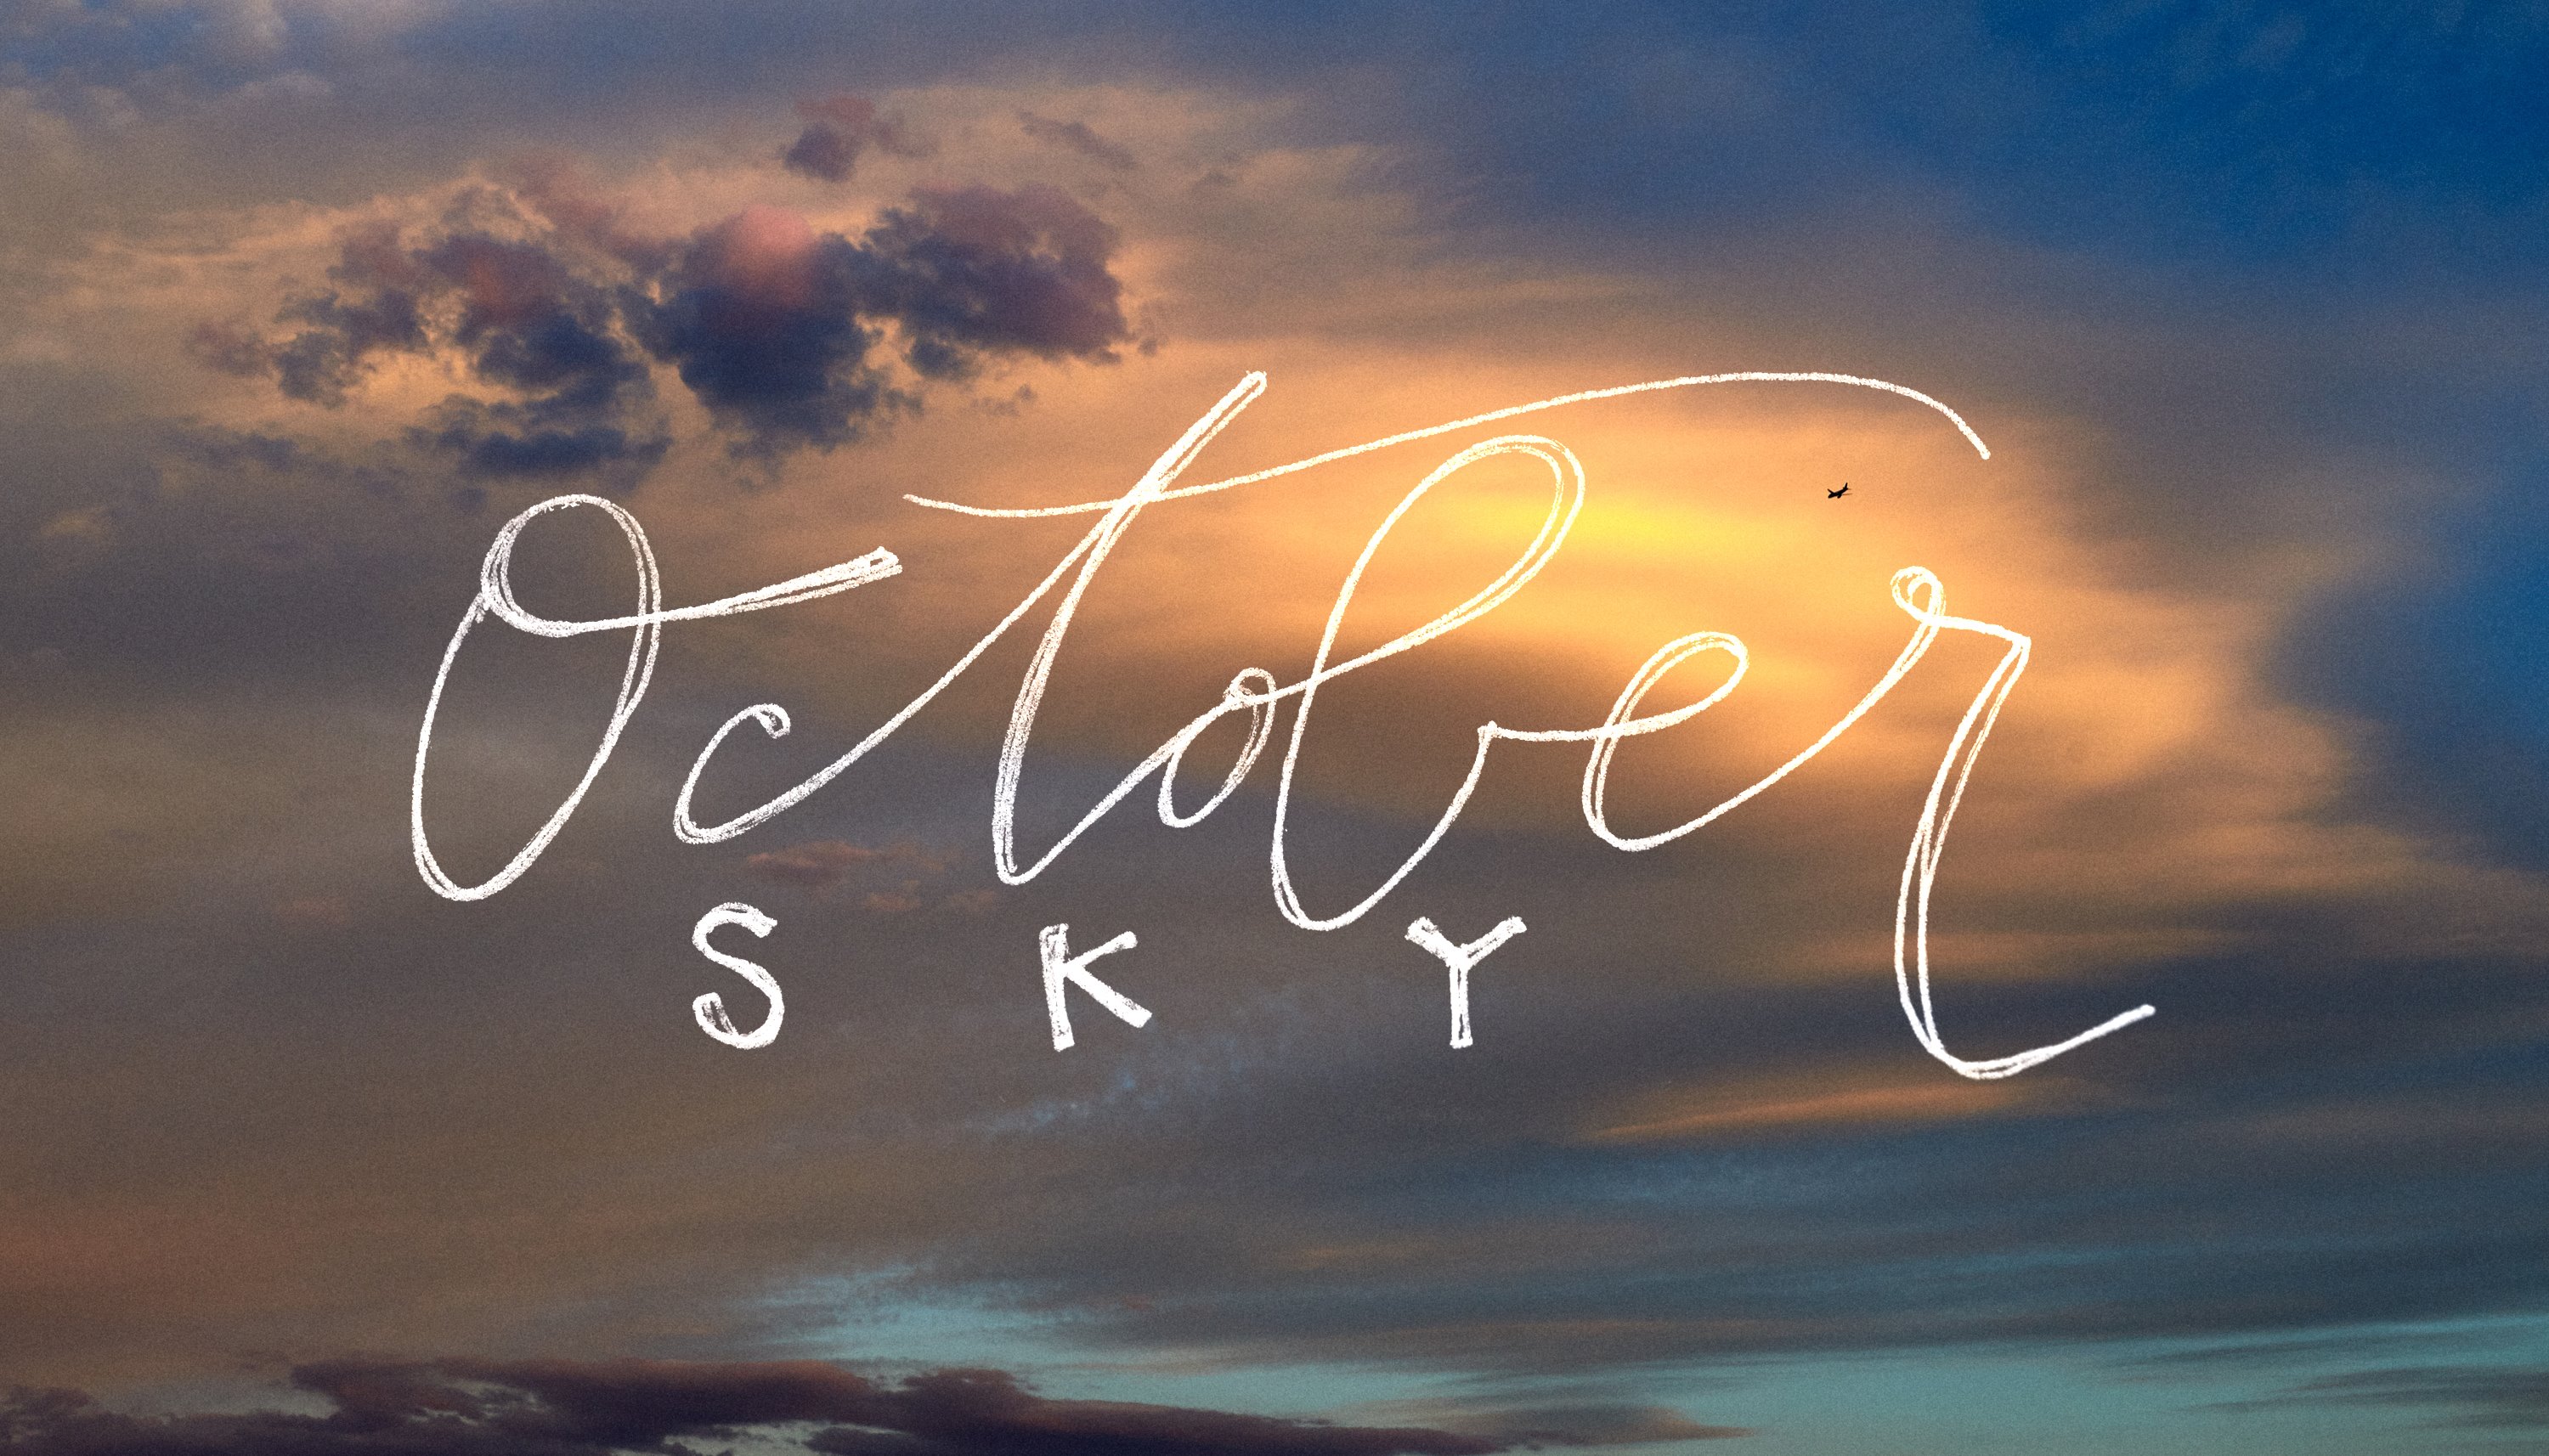 Read October Sky by Aaron Mayes